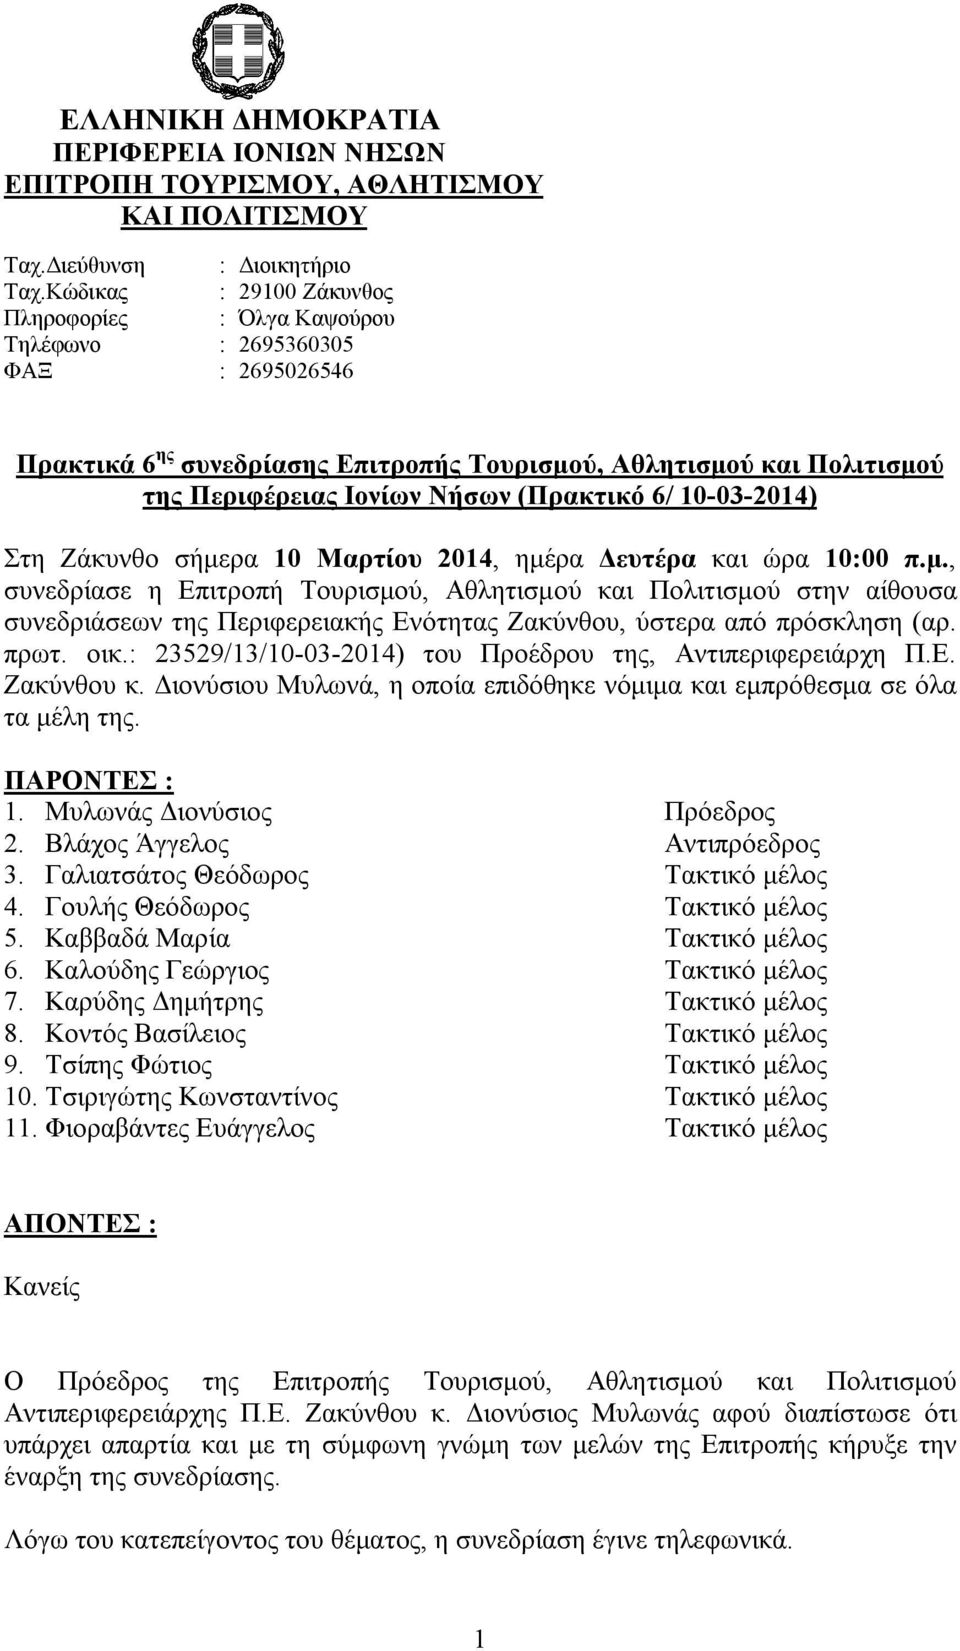 (Πρακτικό 6/ 10-03-2014) Στη Ζάκυνθο σήμερα 10 Μαρτίου 2014, ημέρα Δευτέρα και ώρα 10:00 π.μ., συνεδρίασε η Επιτροπή Τουρισμού, Αθλητισμού και Πολιτισμού στην αίθουσα συνεδριάσεων της Περιφερειακής Ενότητας Ζακύνθου, ύστερα από πρόσκληση (αρ.